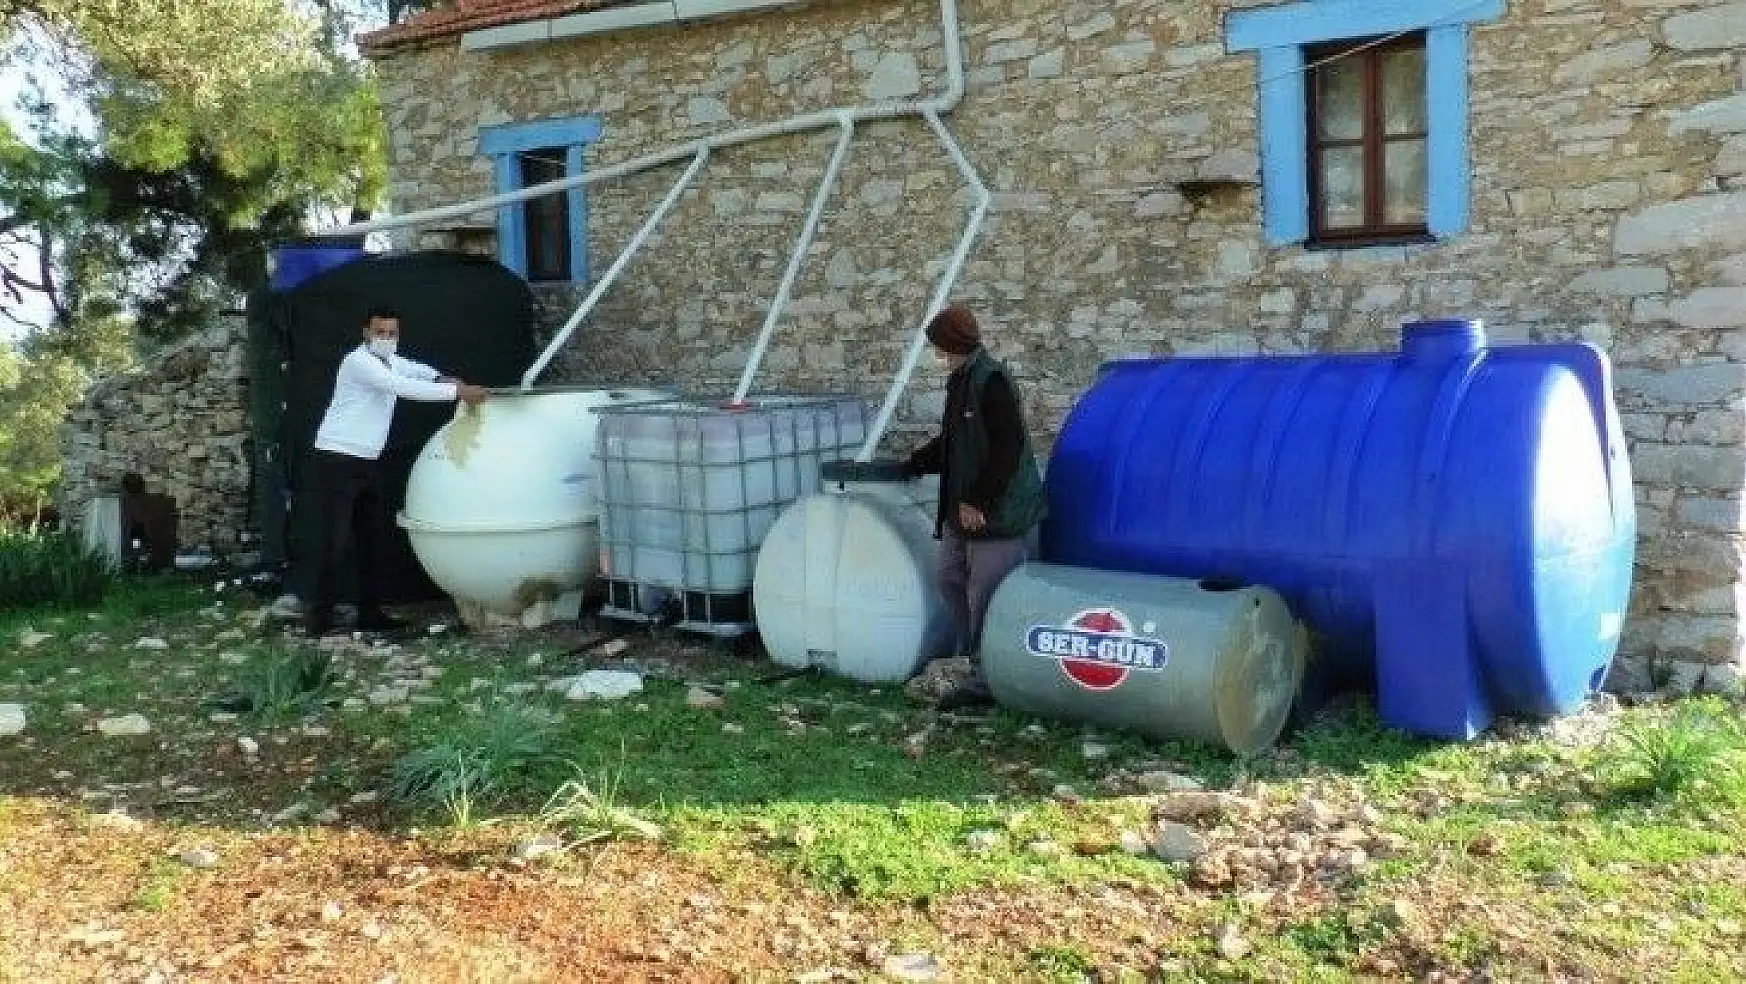 Turizm kenti Bodrum'un merkeze bağlı köyünde susuzluk isyanı